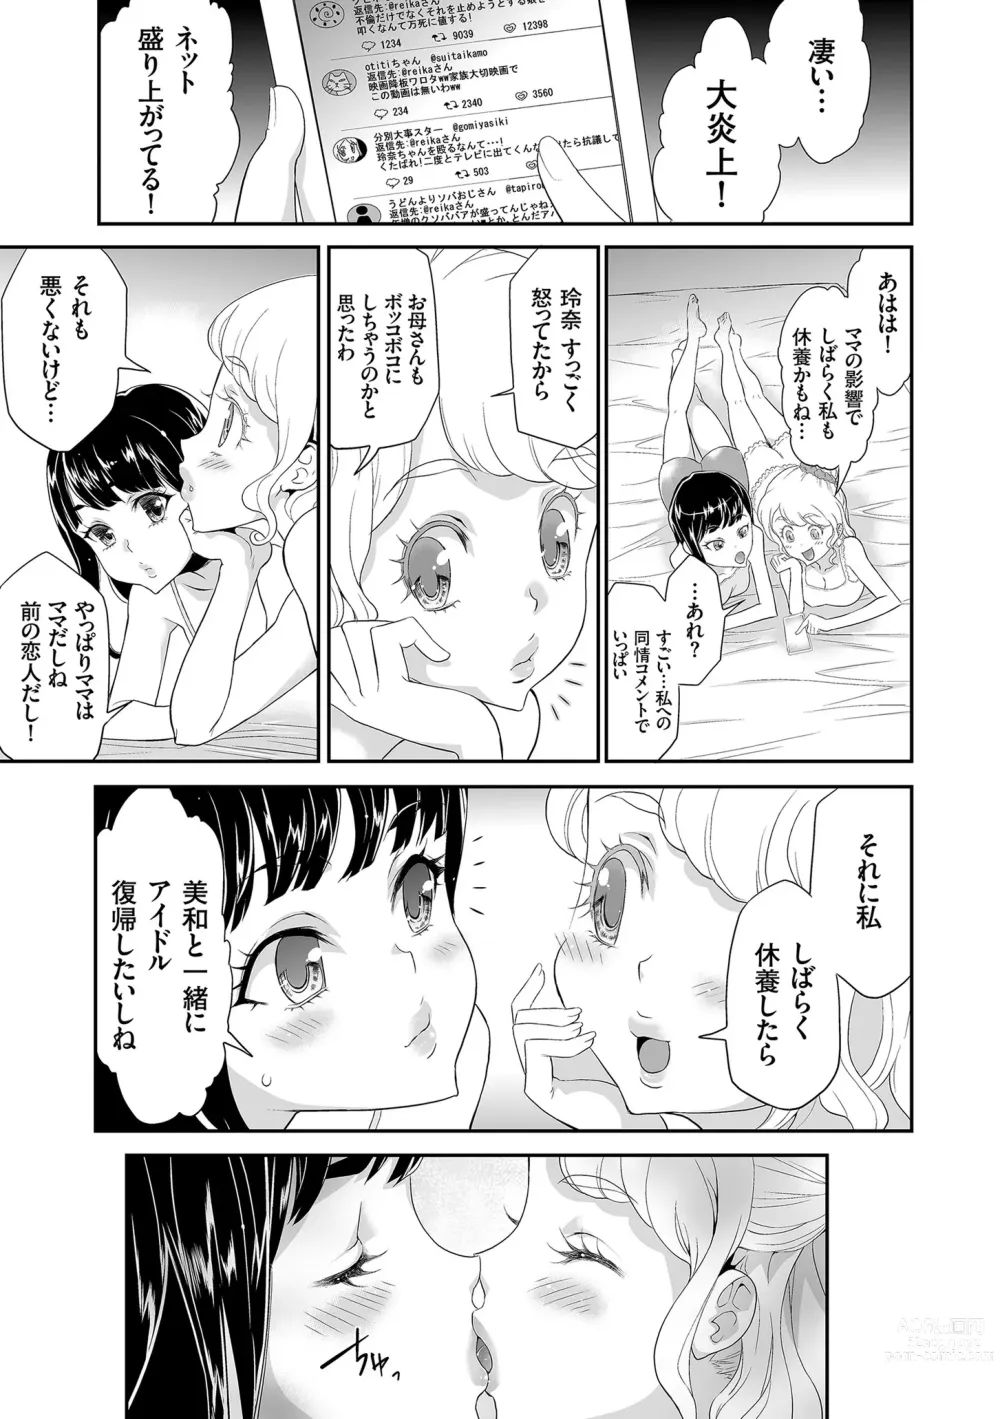 Page 191 of manga Idol Kankin Live!